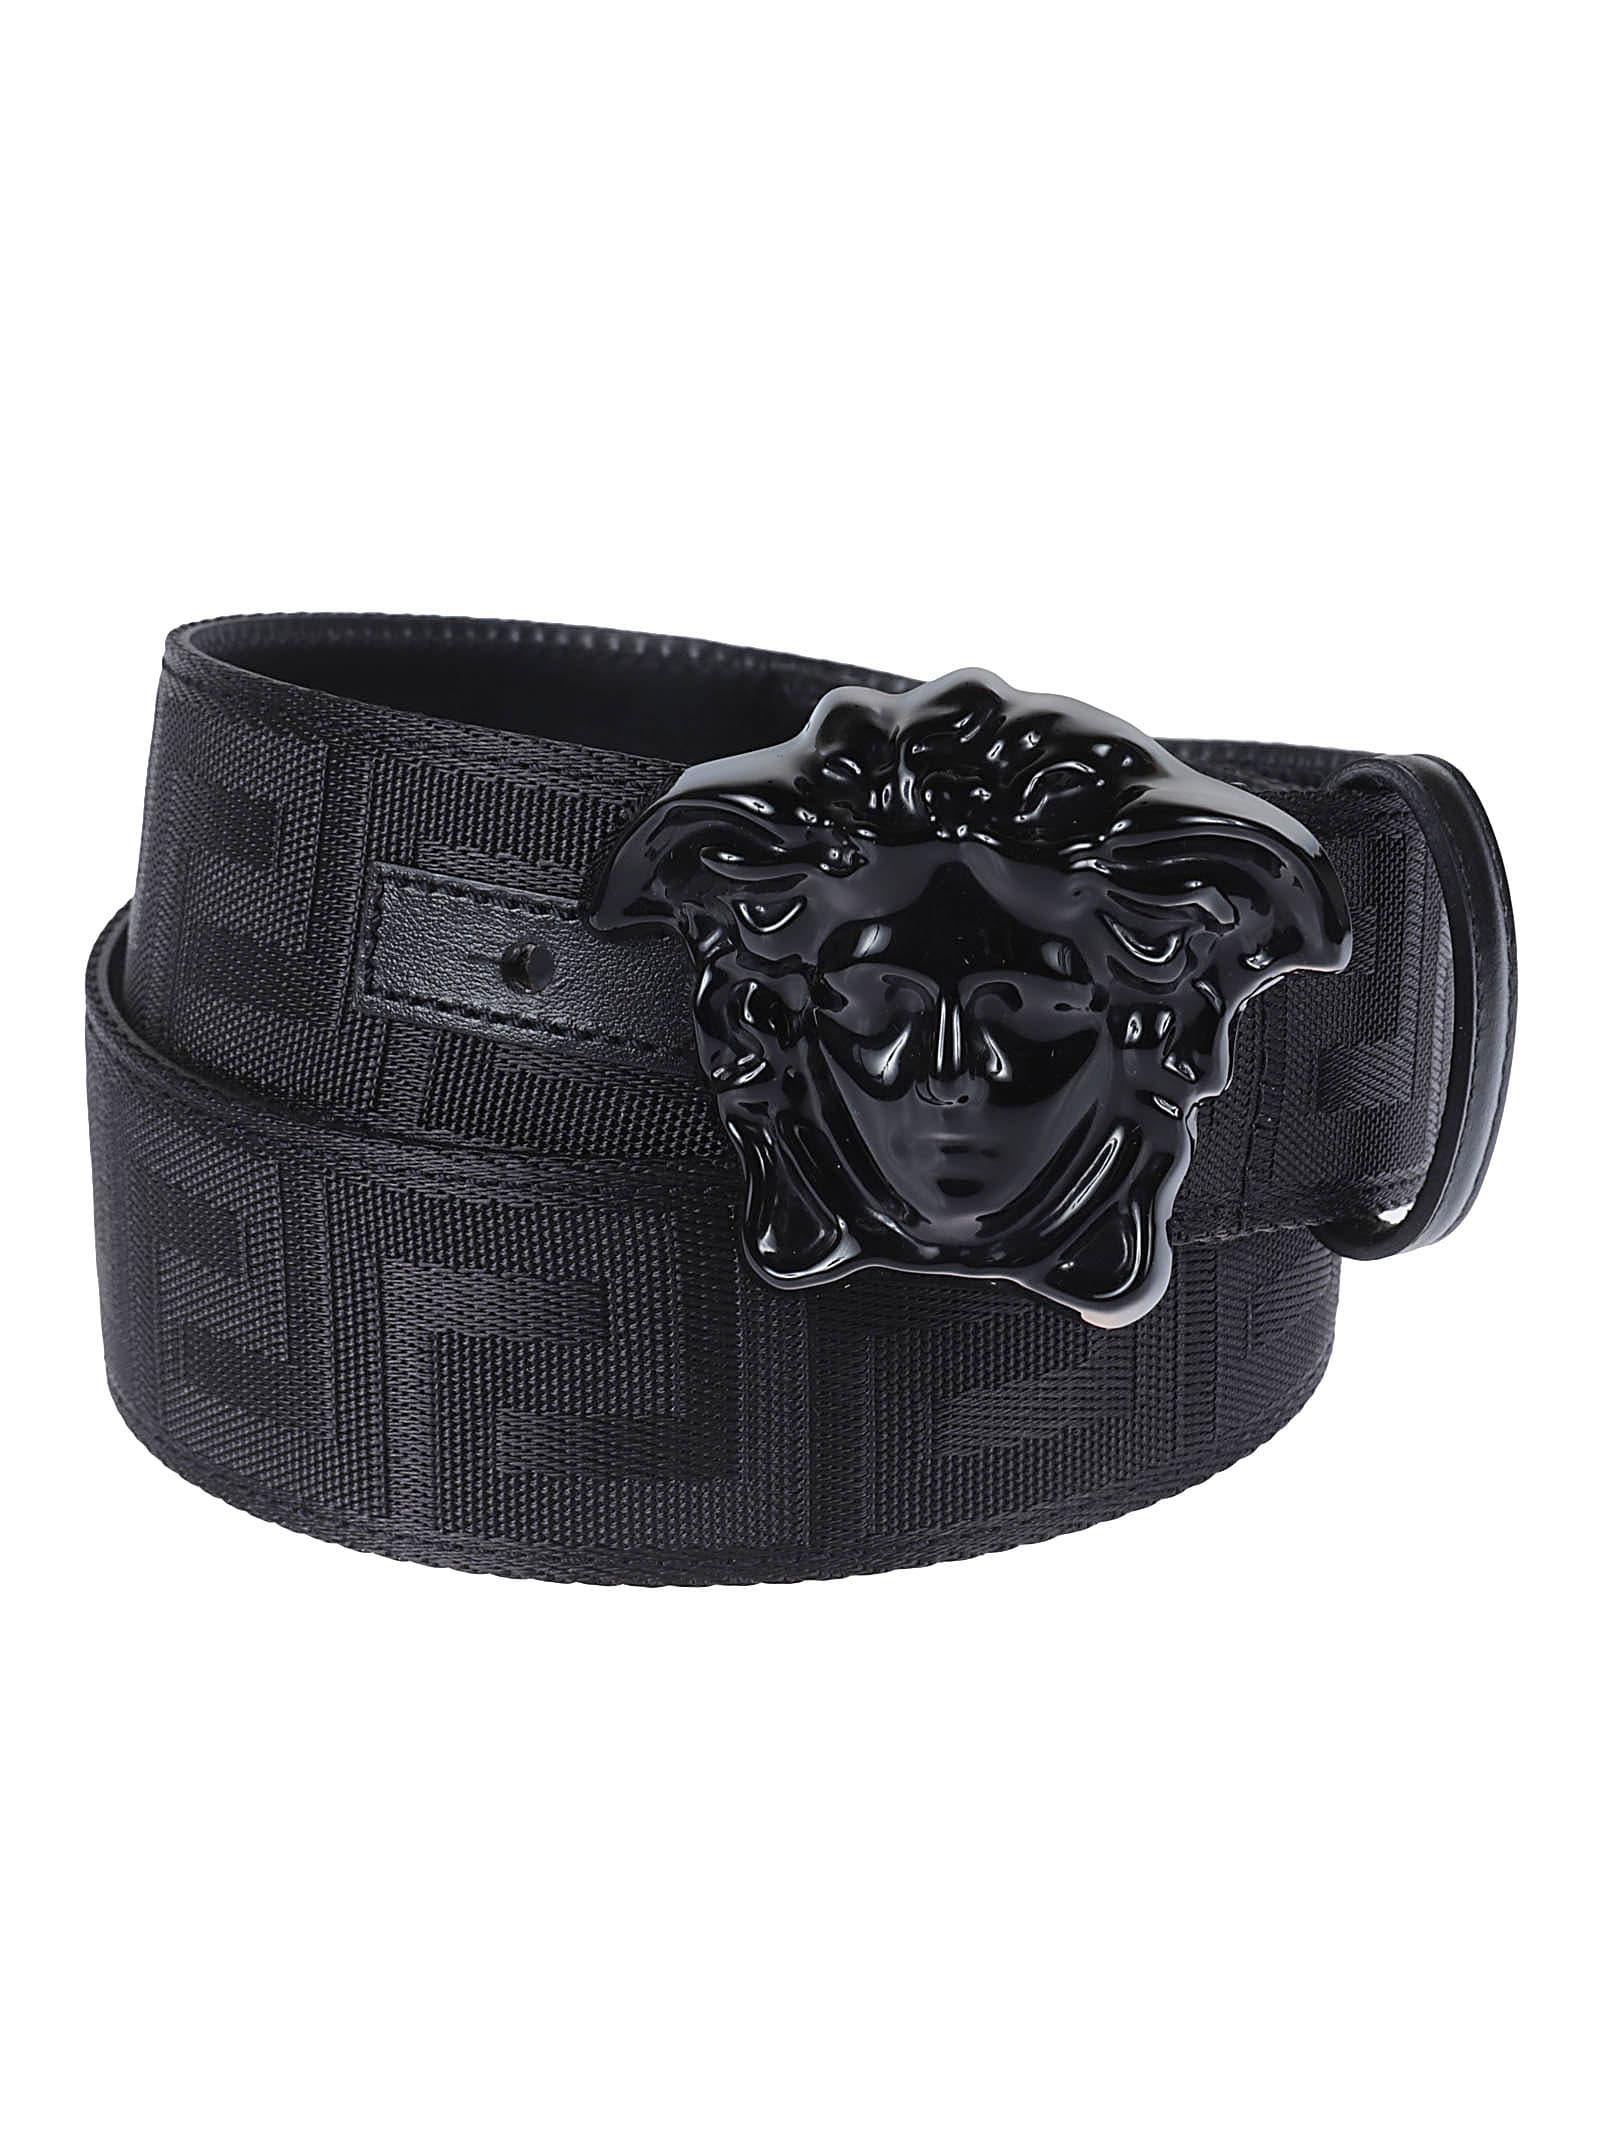 versace belt black